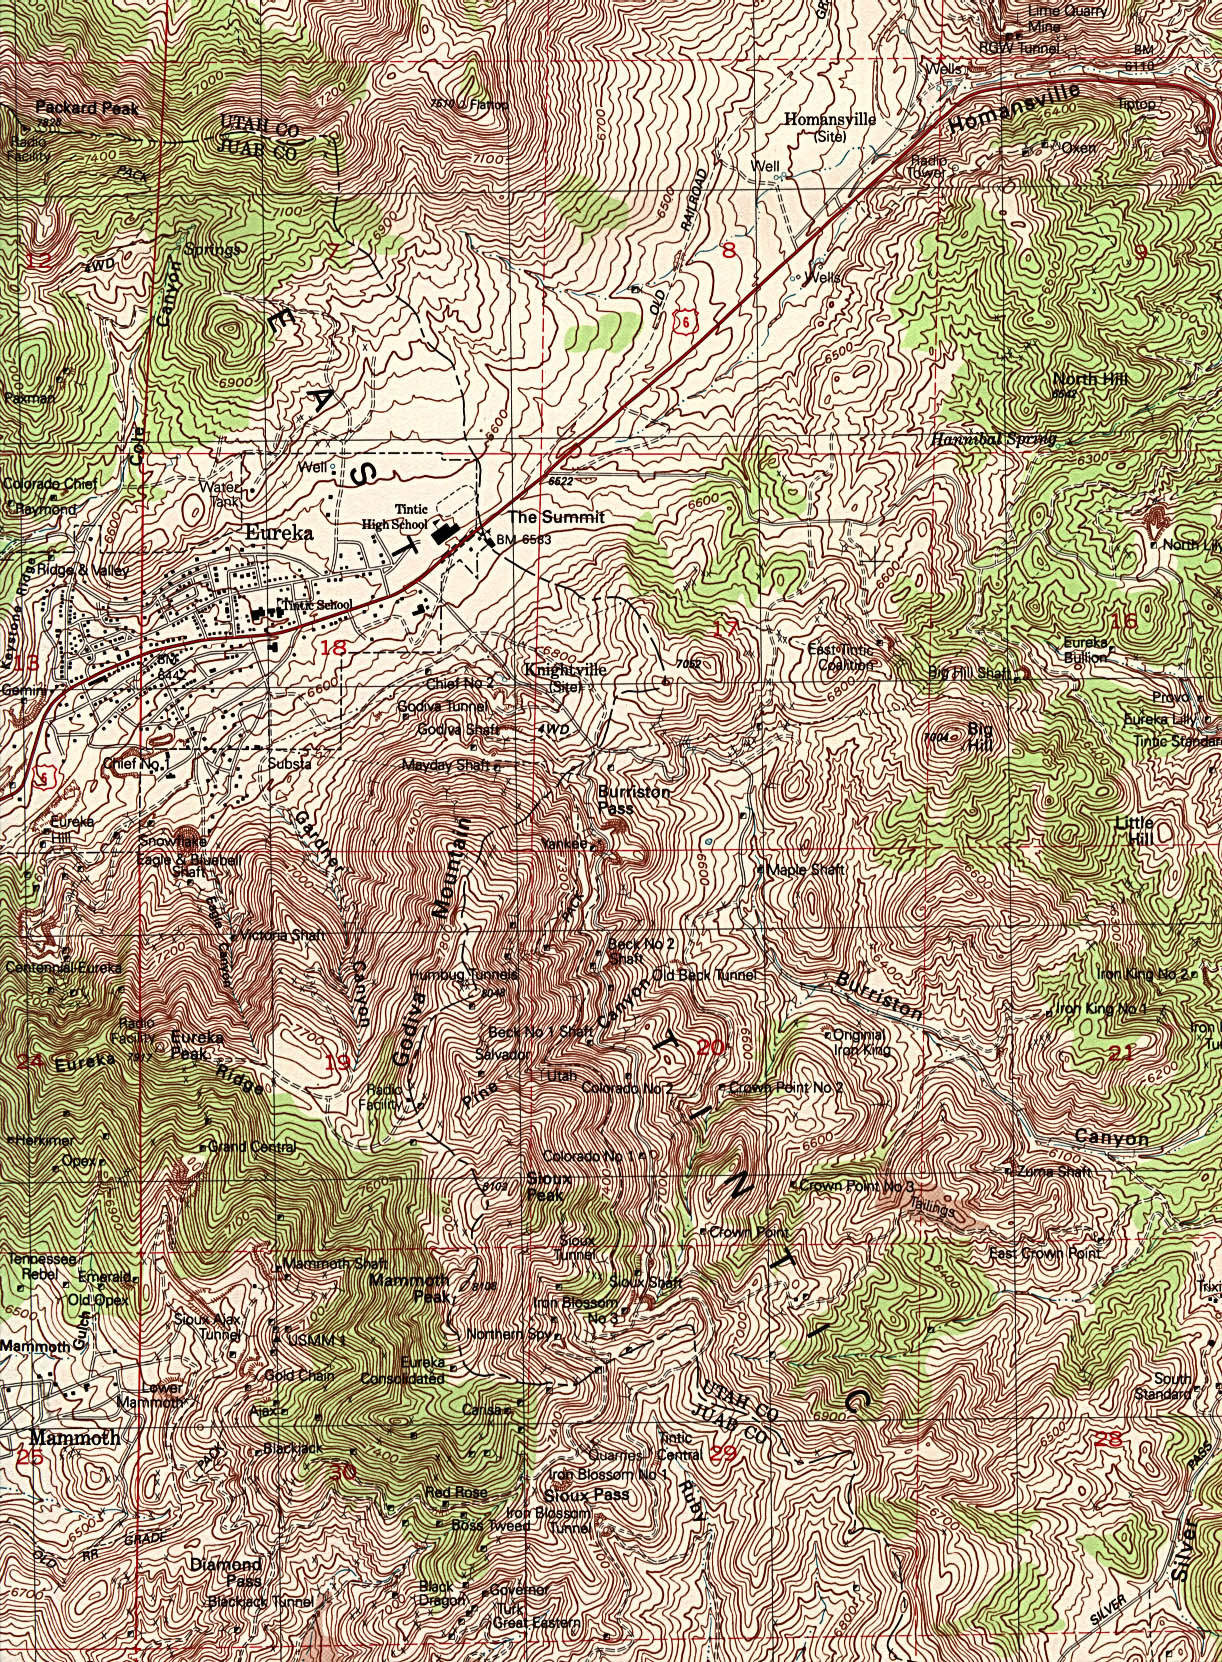  Maps of Utah. Eureka [Topographic Map] original scale 1:24,000 U.S.G.S. 1992 (1MB) 